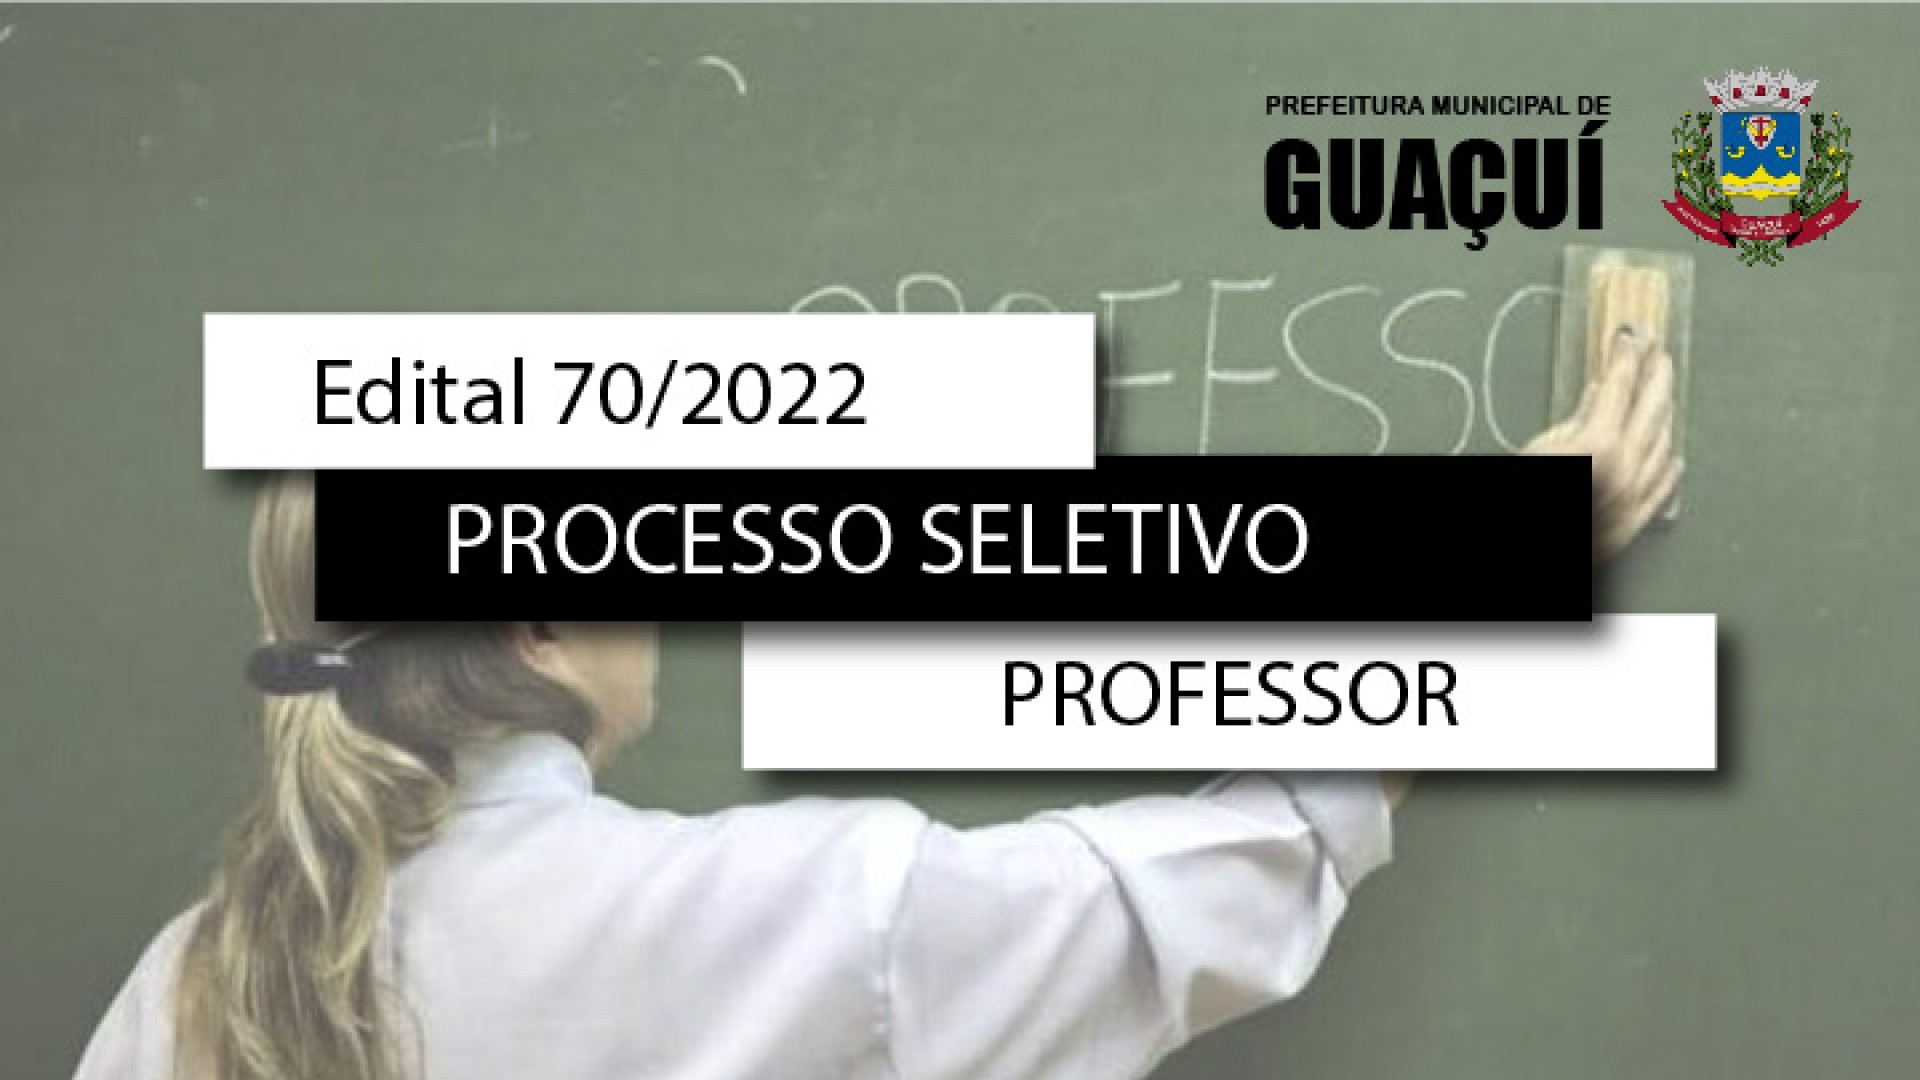 EDITAL EDUCAÇÃO Nº 070/2022 - PROFESSORES